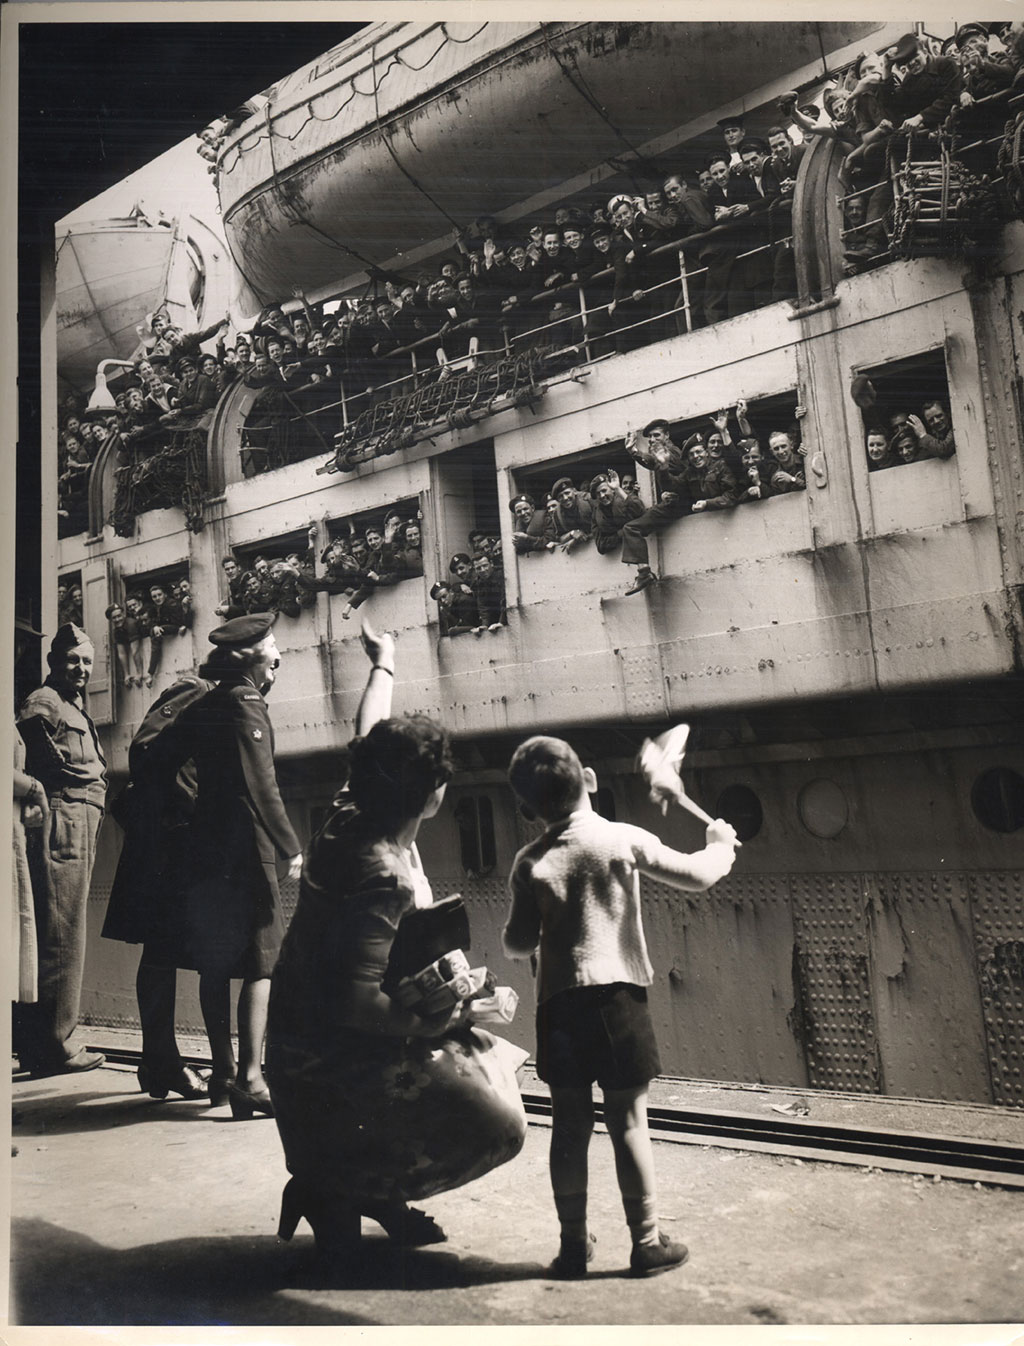 Une vieille photo en noir et blanc du temps de la guerre montrant un navire de transport de troupes amarré. Des centaines de soldats envoient la main et un petit garçon et sa mère leur envoient la main en retour à partir d'une plateforme. La photo montre aussi un militaire qui regarde la scène.